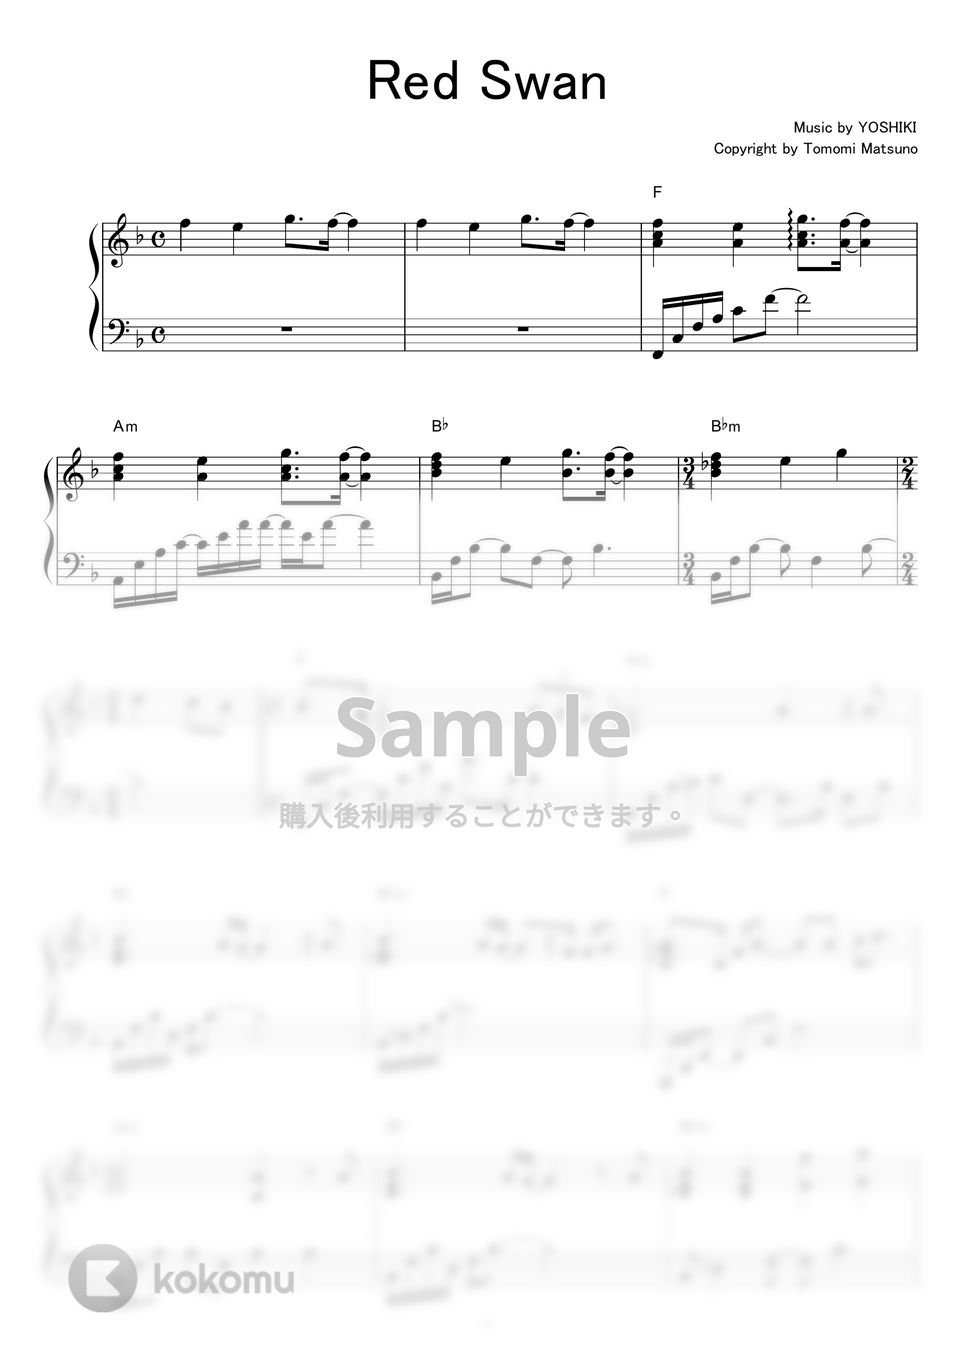 進撃の巨人 - Red Swan by piano*score